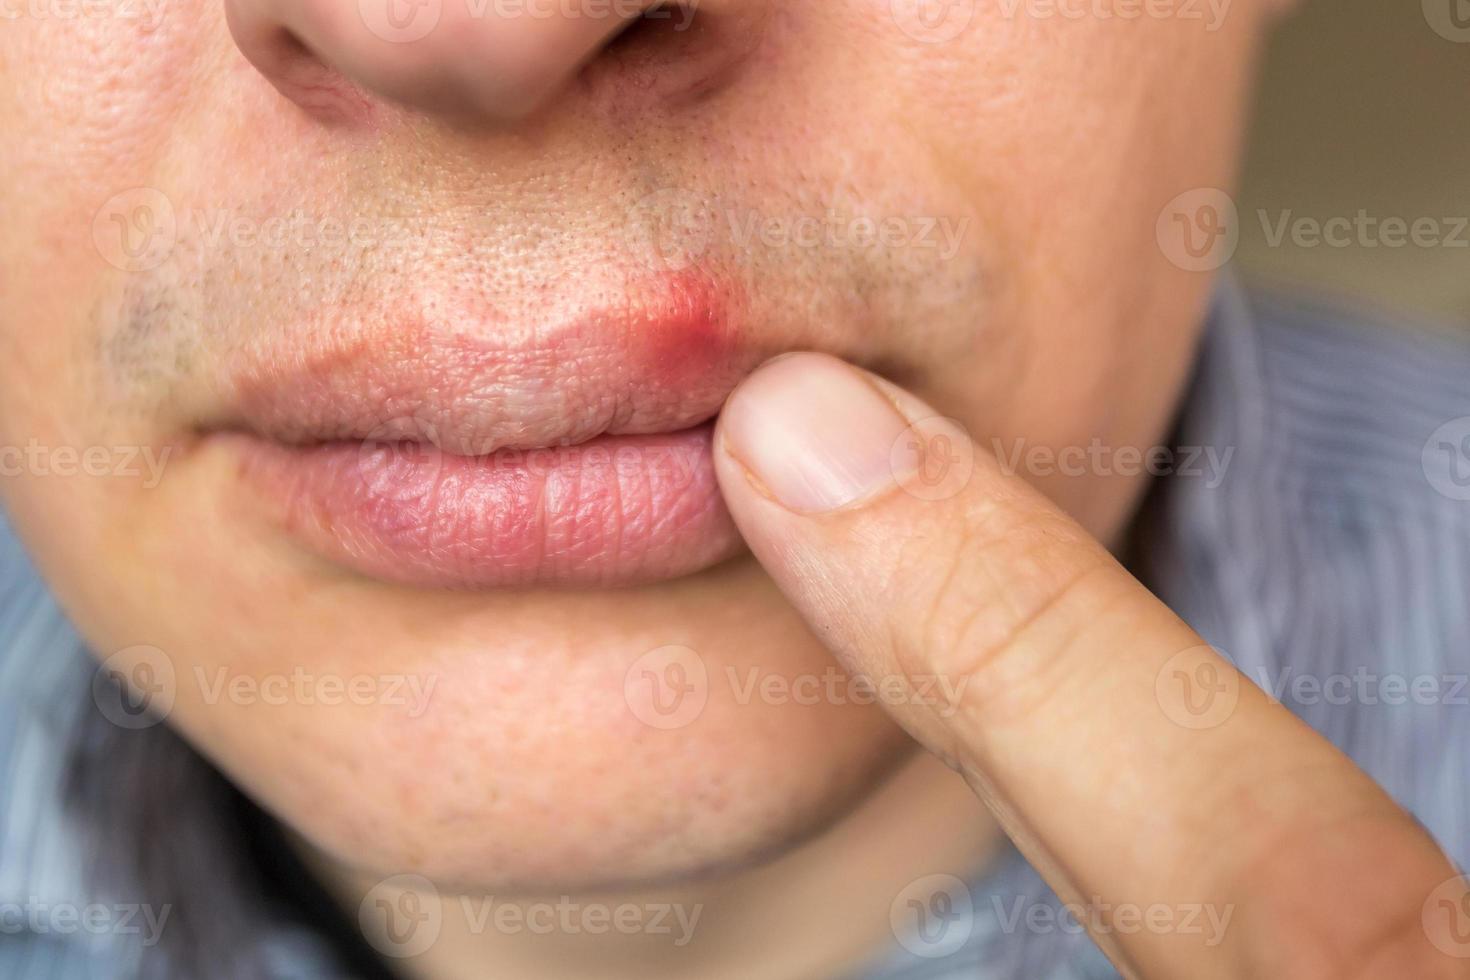 inflamación roja y virus herpes zoster en el labio superior masculino foto